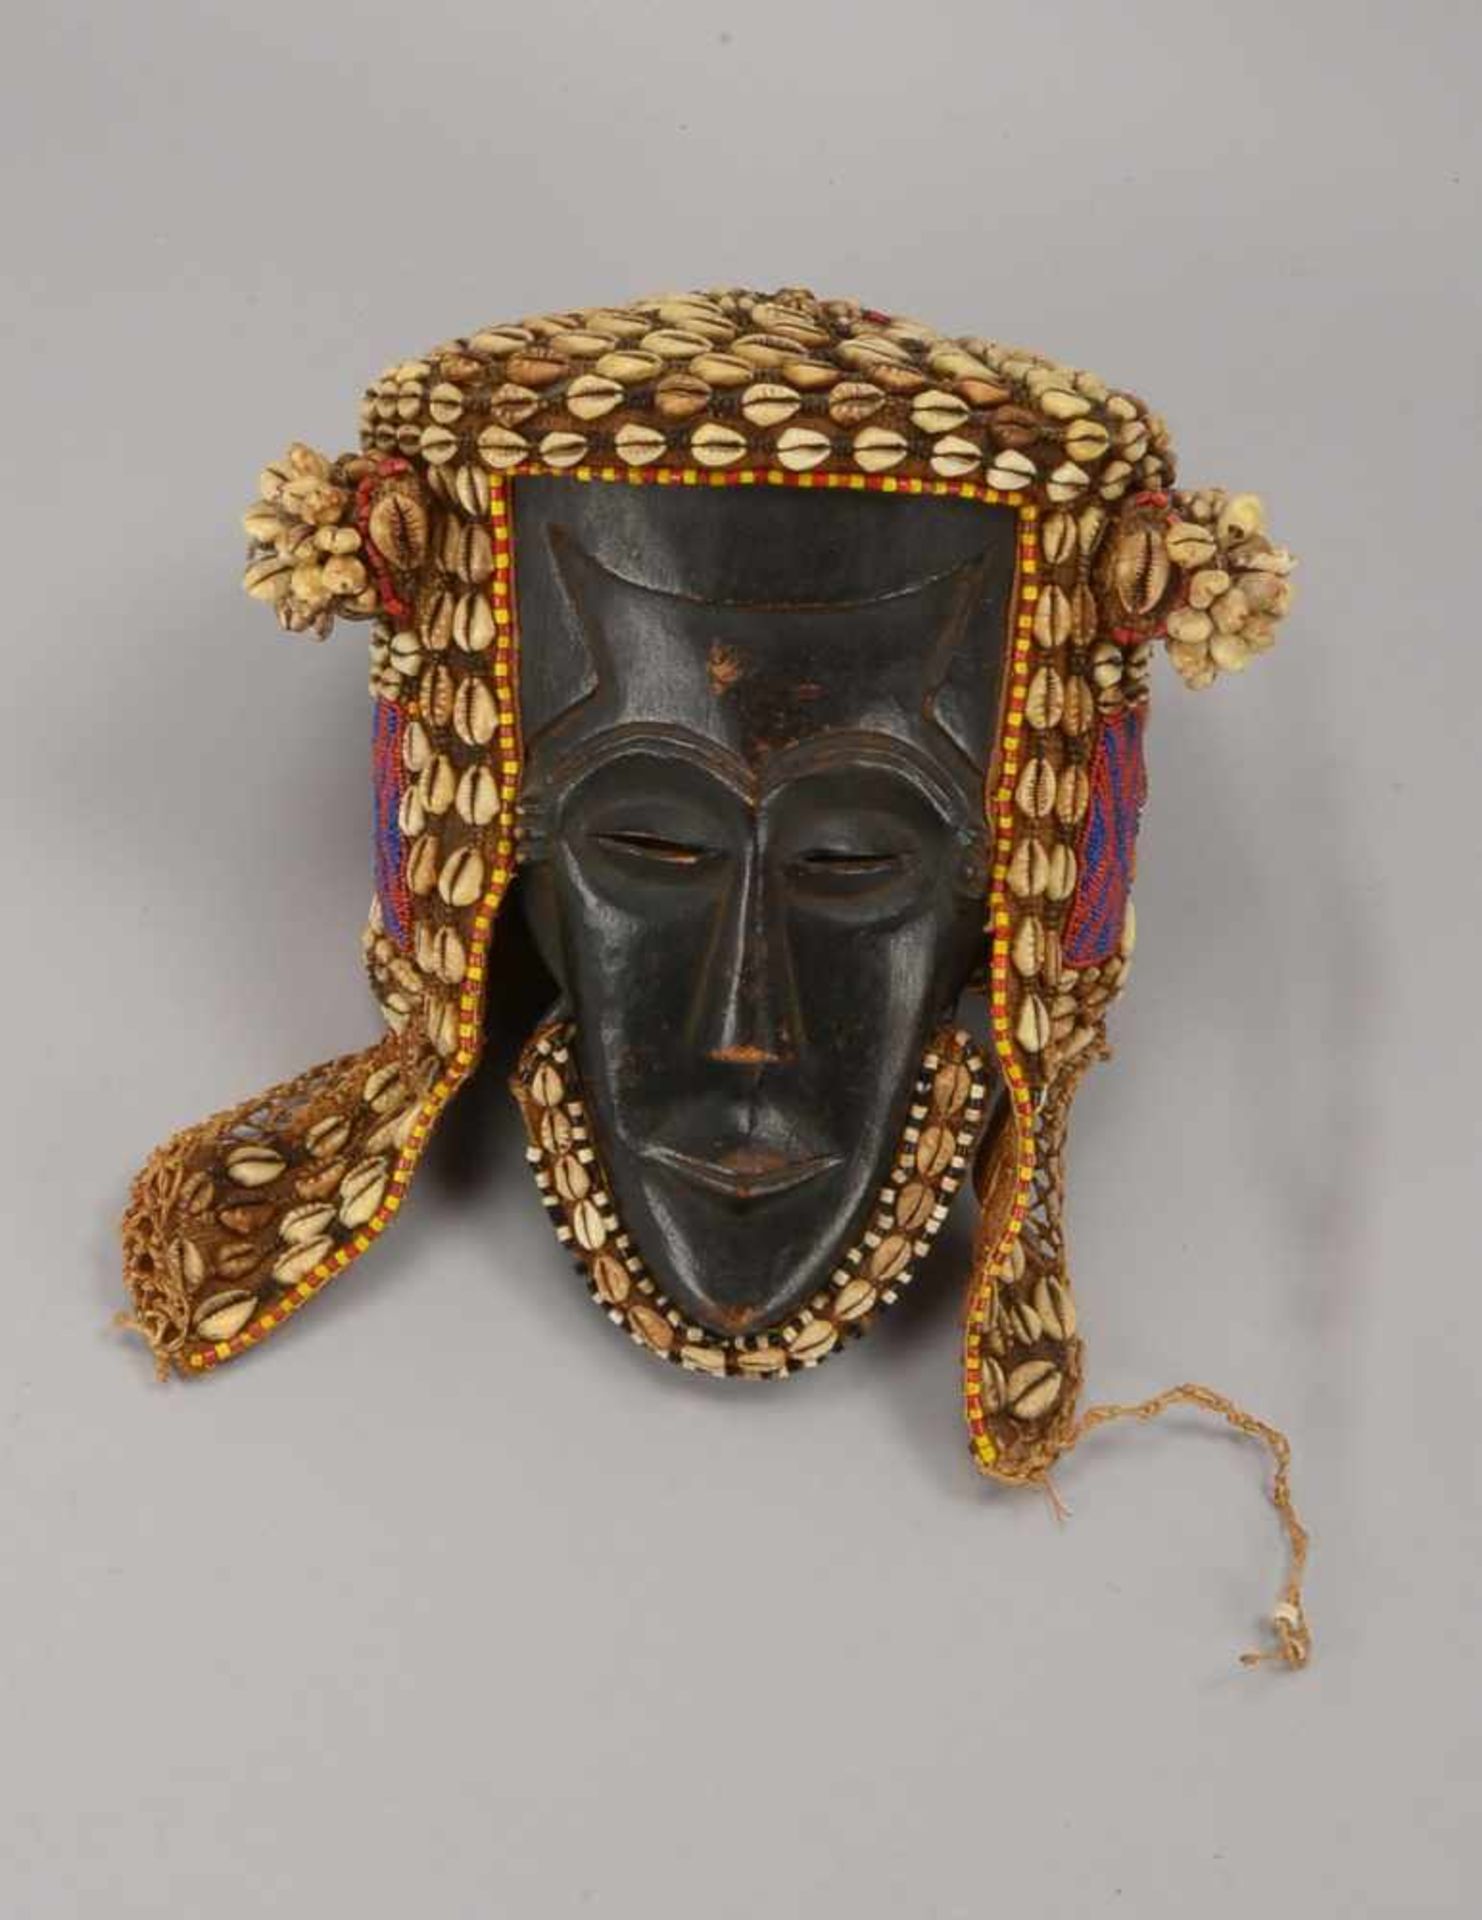 Maske der Kuba/Kongo (früher: Zaïre), Holz, mit schöner Alterspatina, Kopfschmuck und